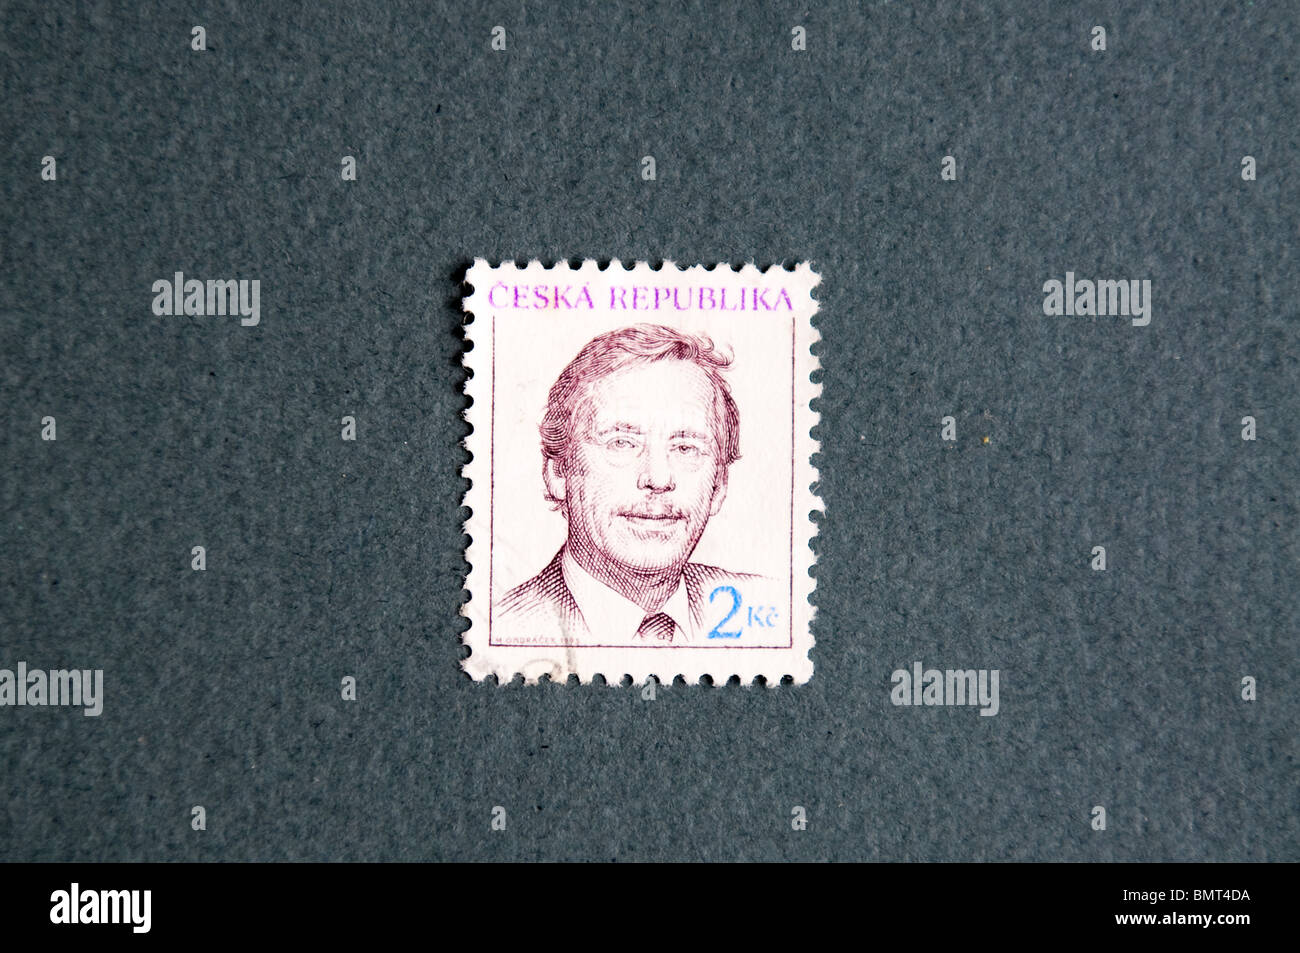 Václav Havel en République tchèque un stamp Banque D'Images